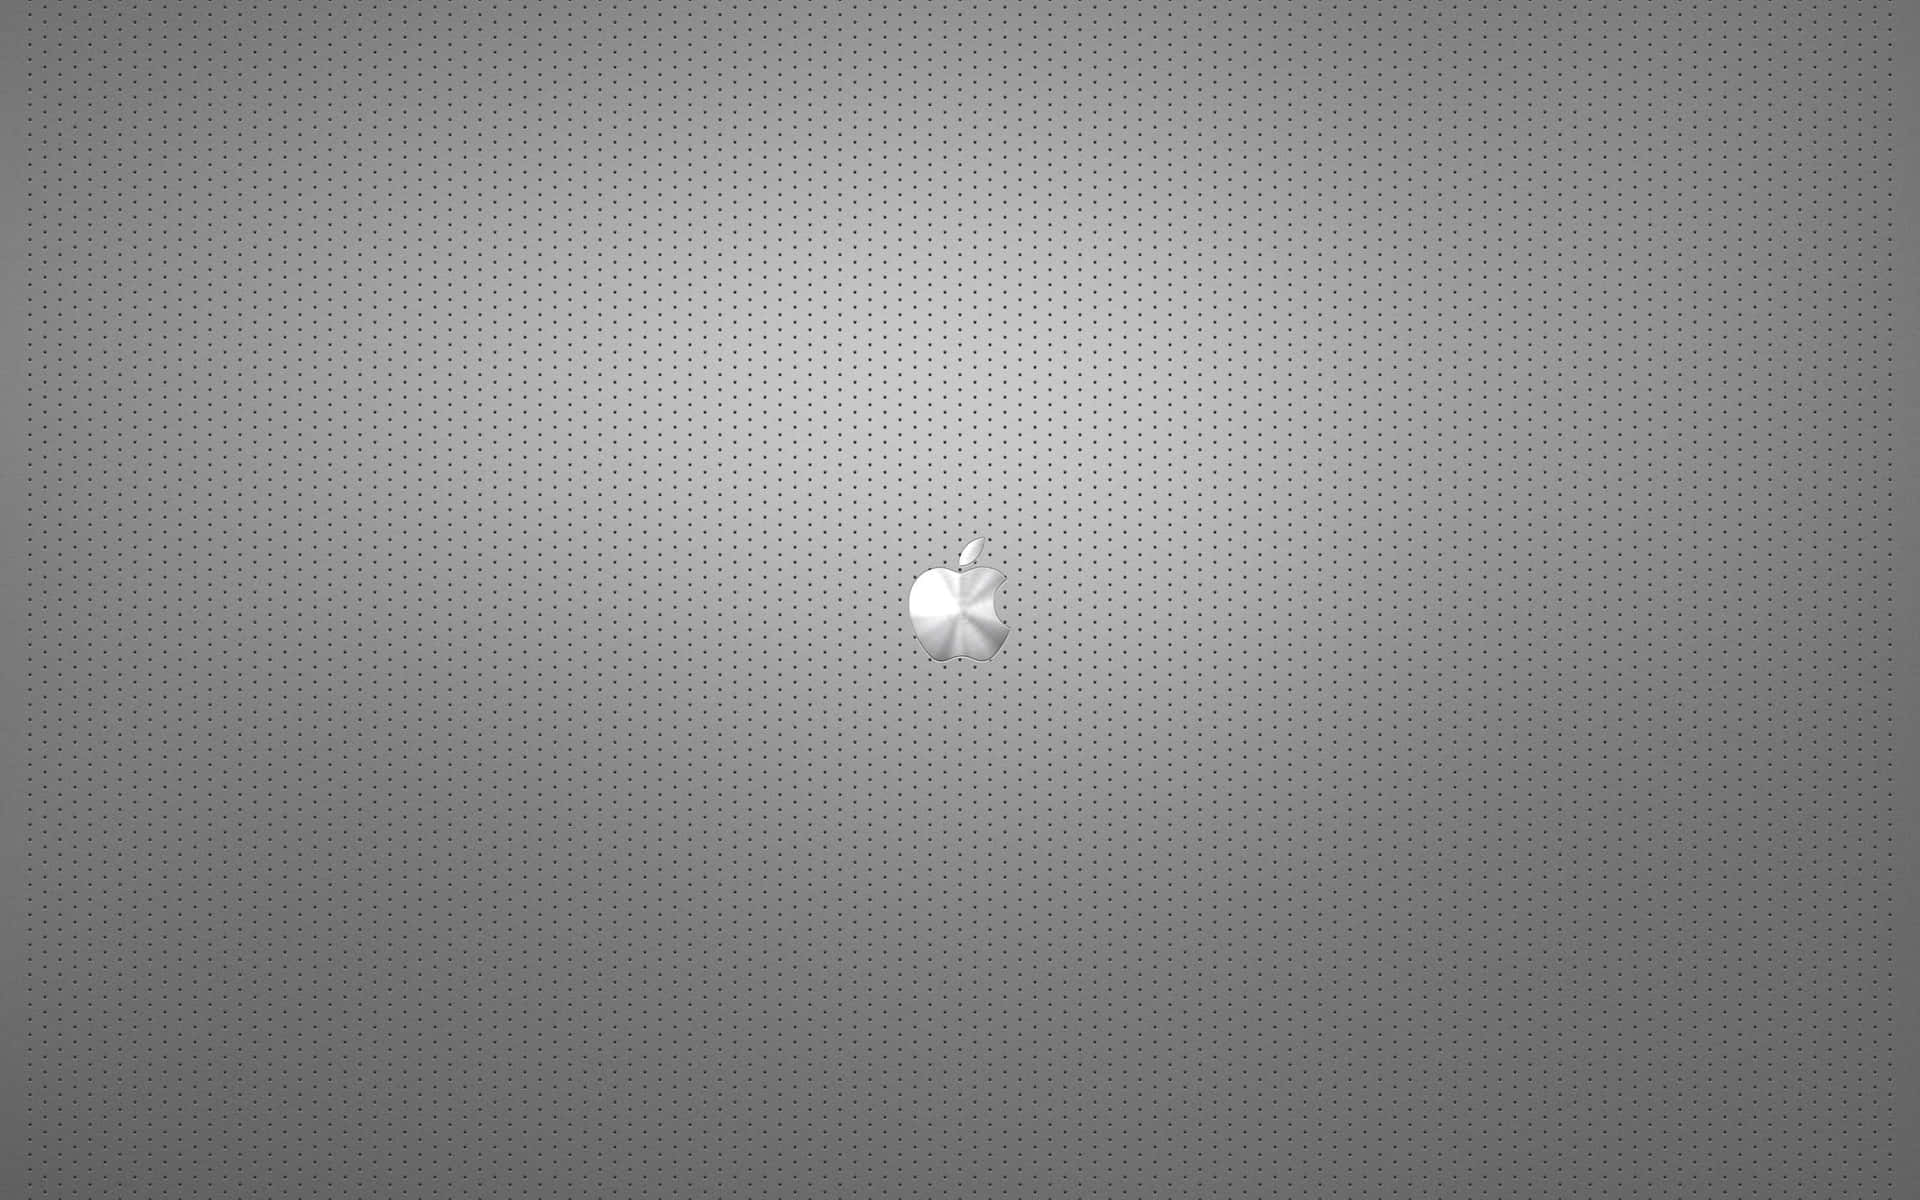 Äpplelogotypsattbakgrundsbilder I Hd.